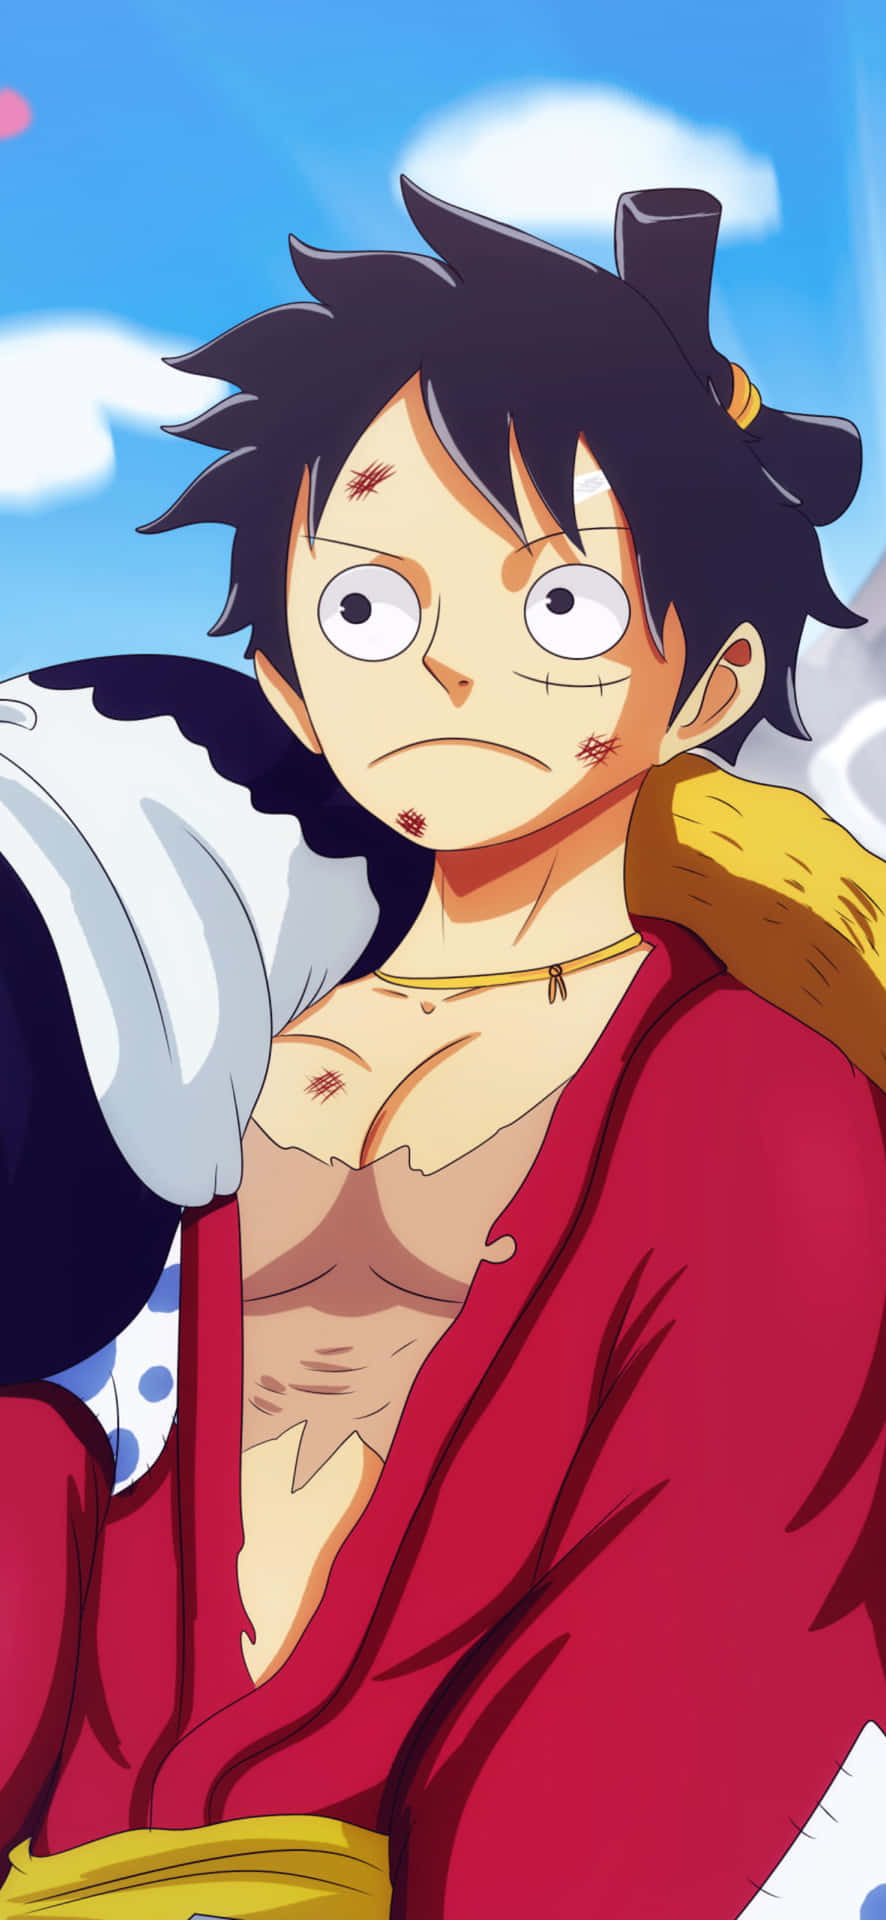 Luffyaus Der Äußerst Beliebten Anime-serie One Piece, Dargestellt Auf Dem Ikonischen Iphone. Wallpaper